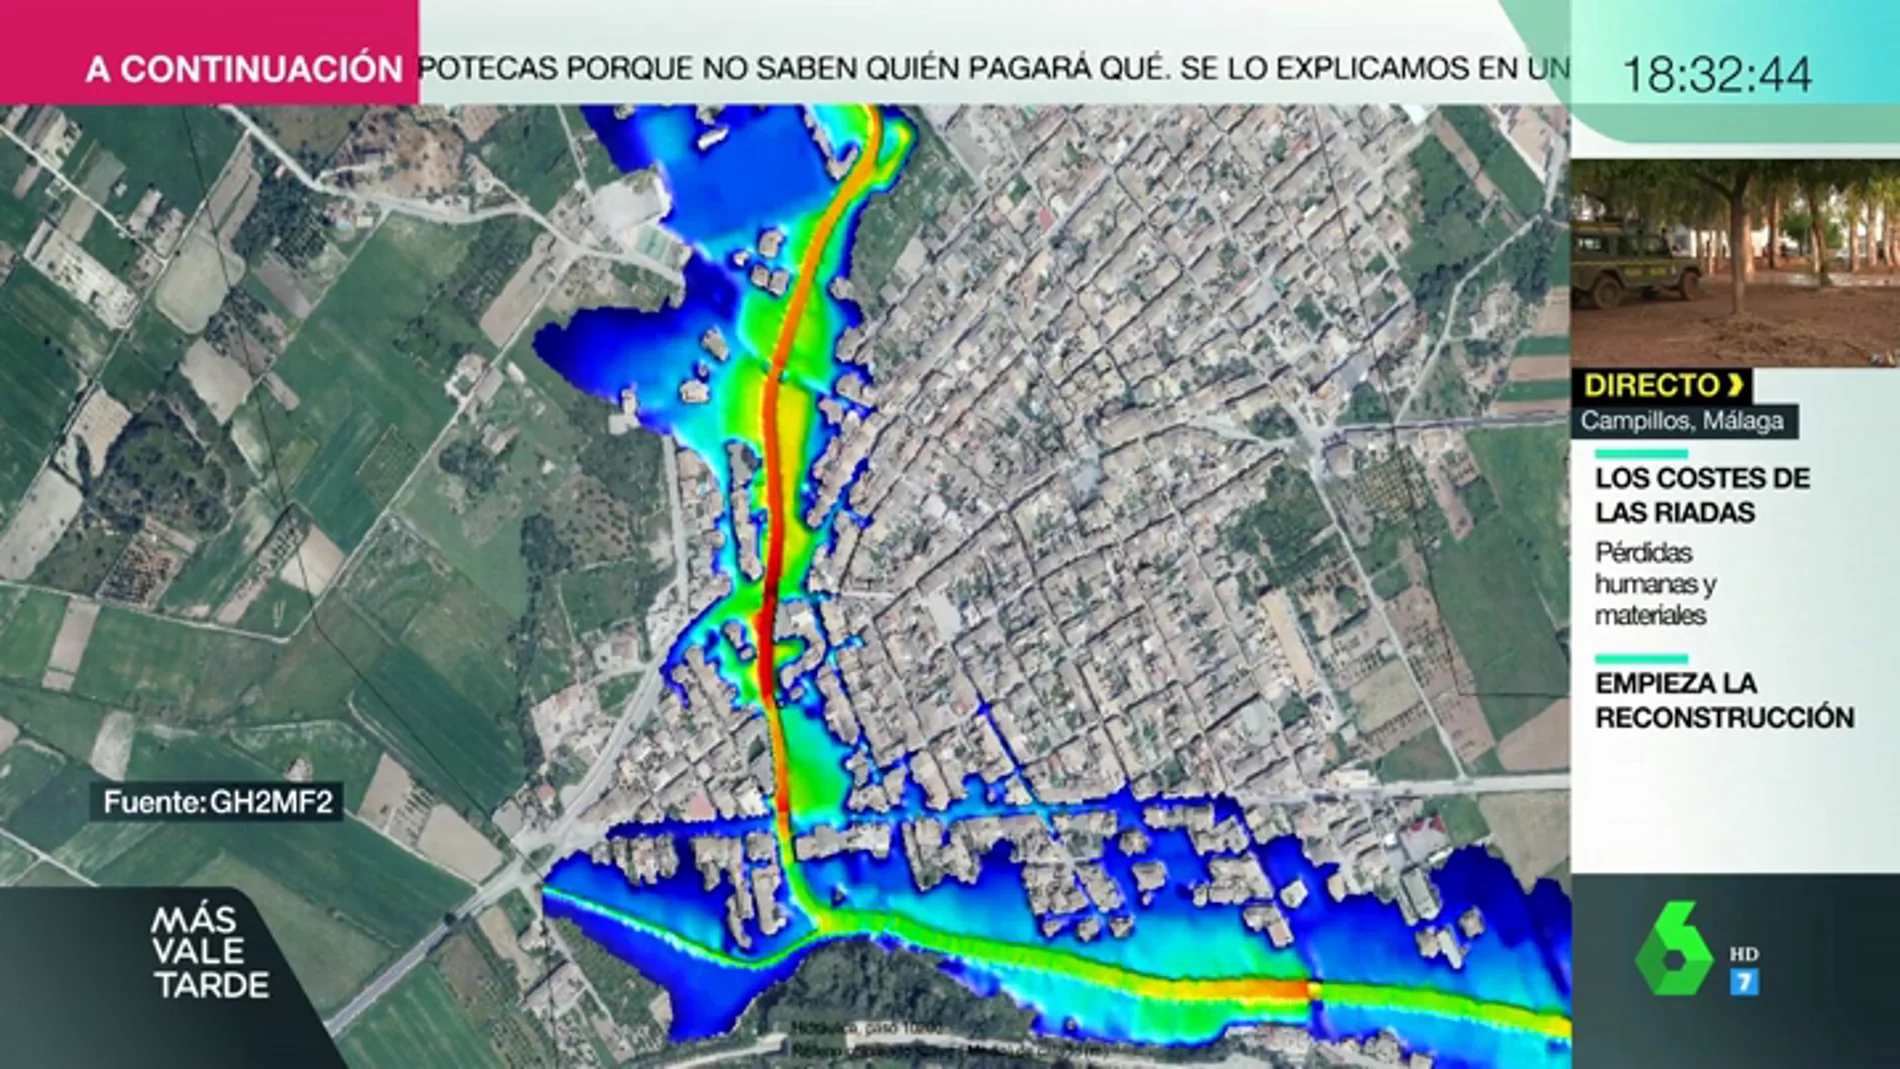 Reconstruyen lo ocurrido y muestran las zonas afectadas: así funciona el satélite que evalúa los daños tras las inundaciones